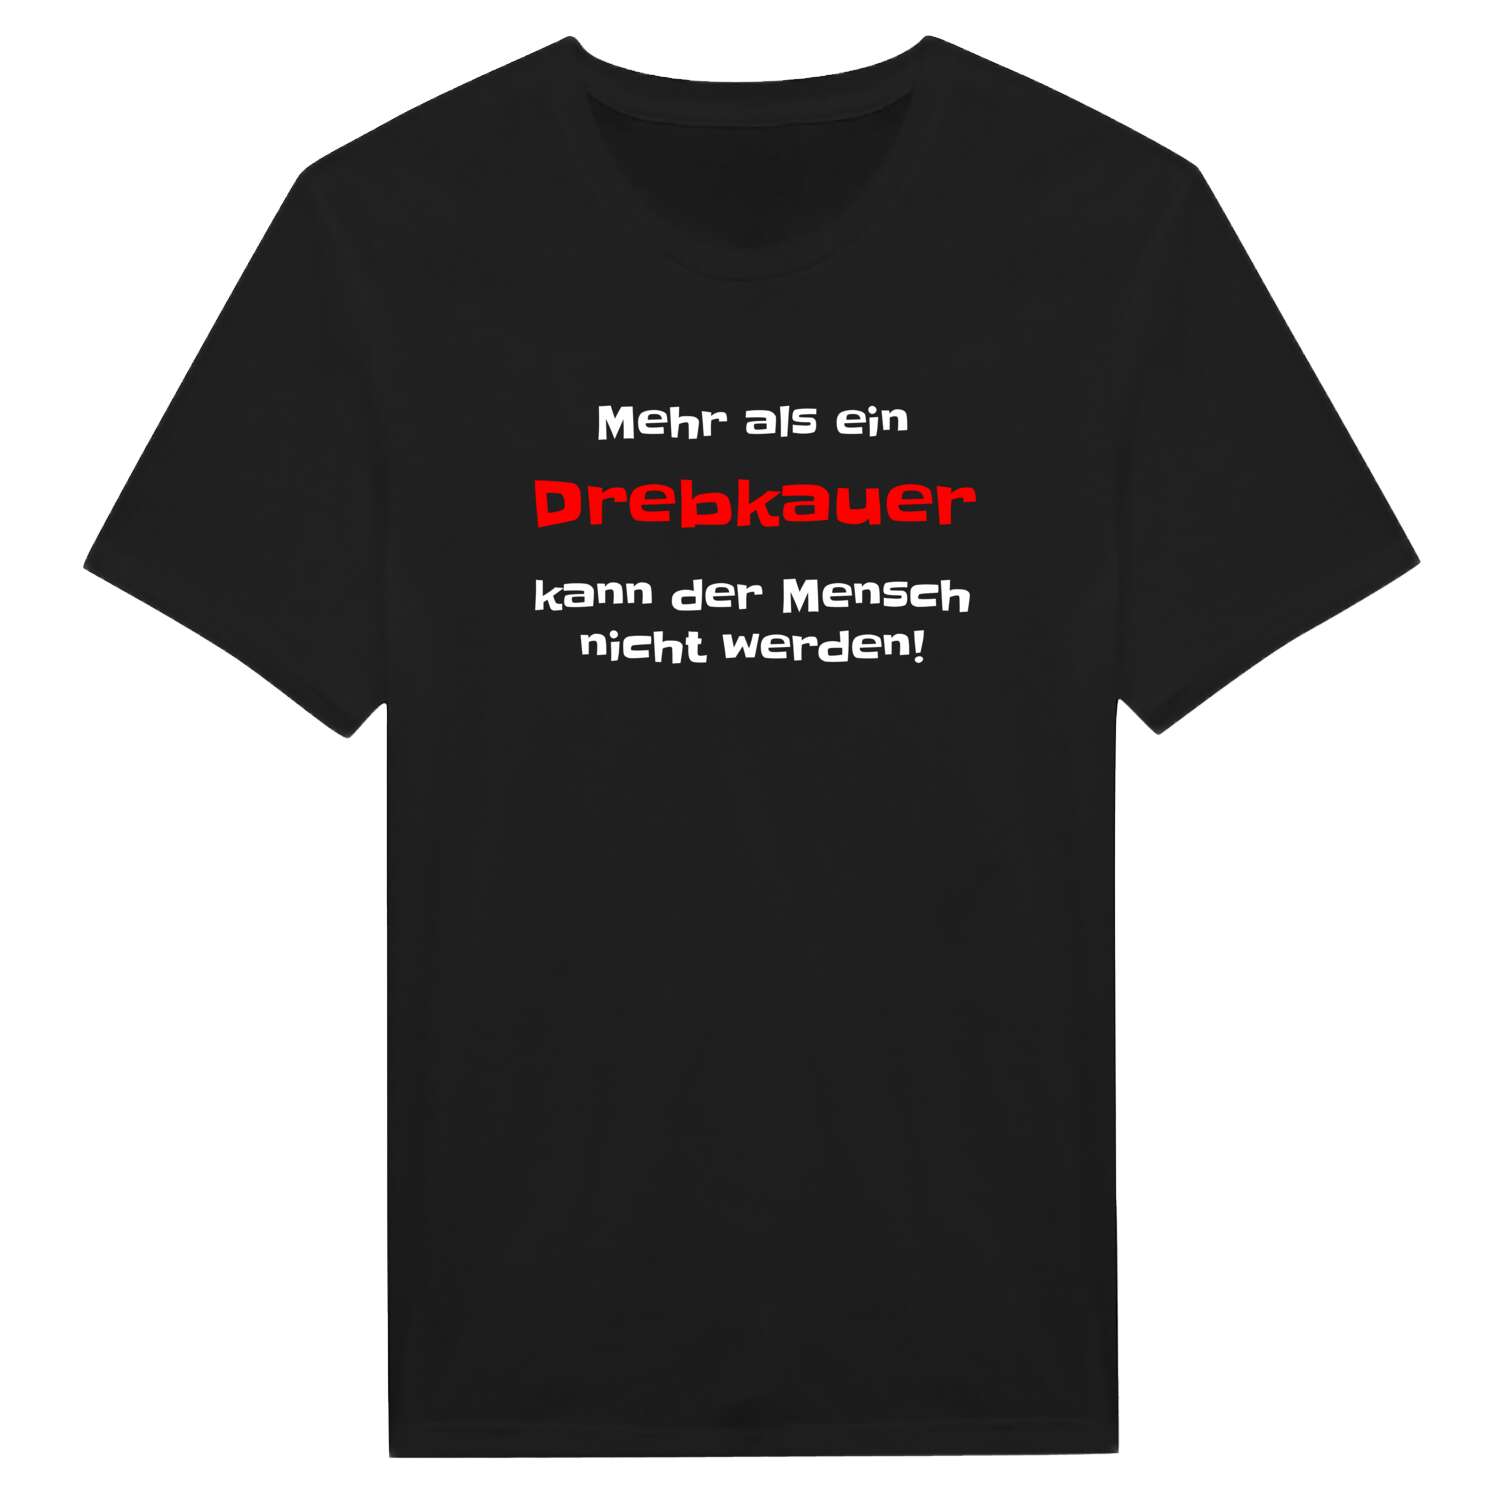 Drebkau T-Shirt »Mehr als ein«